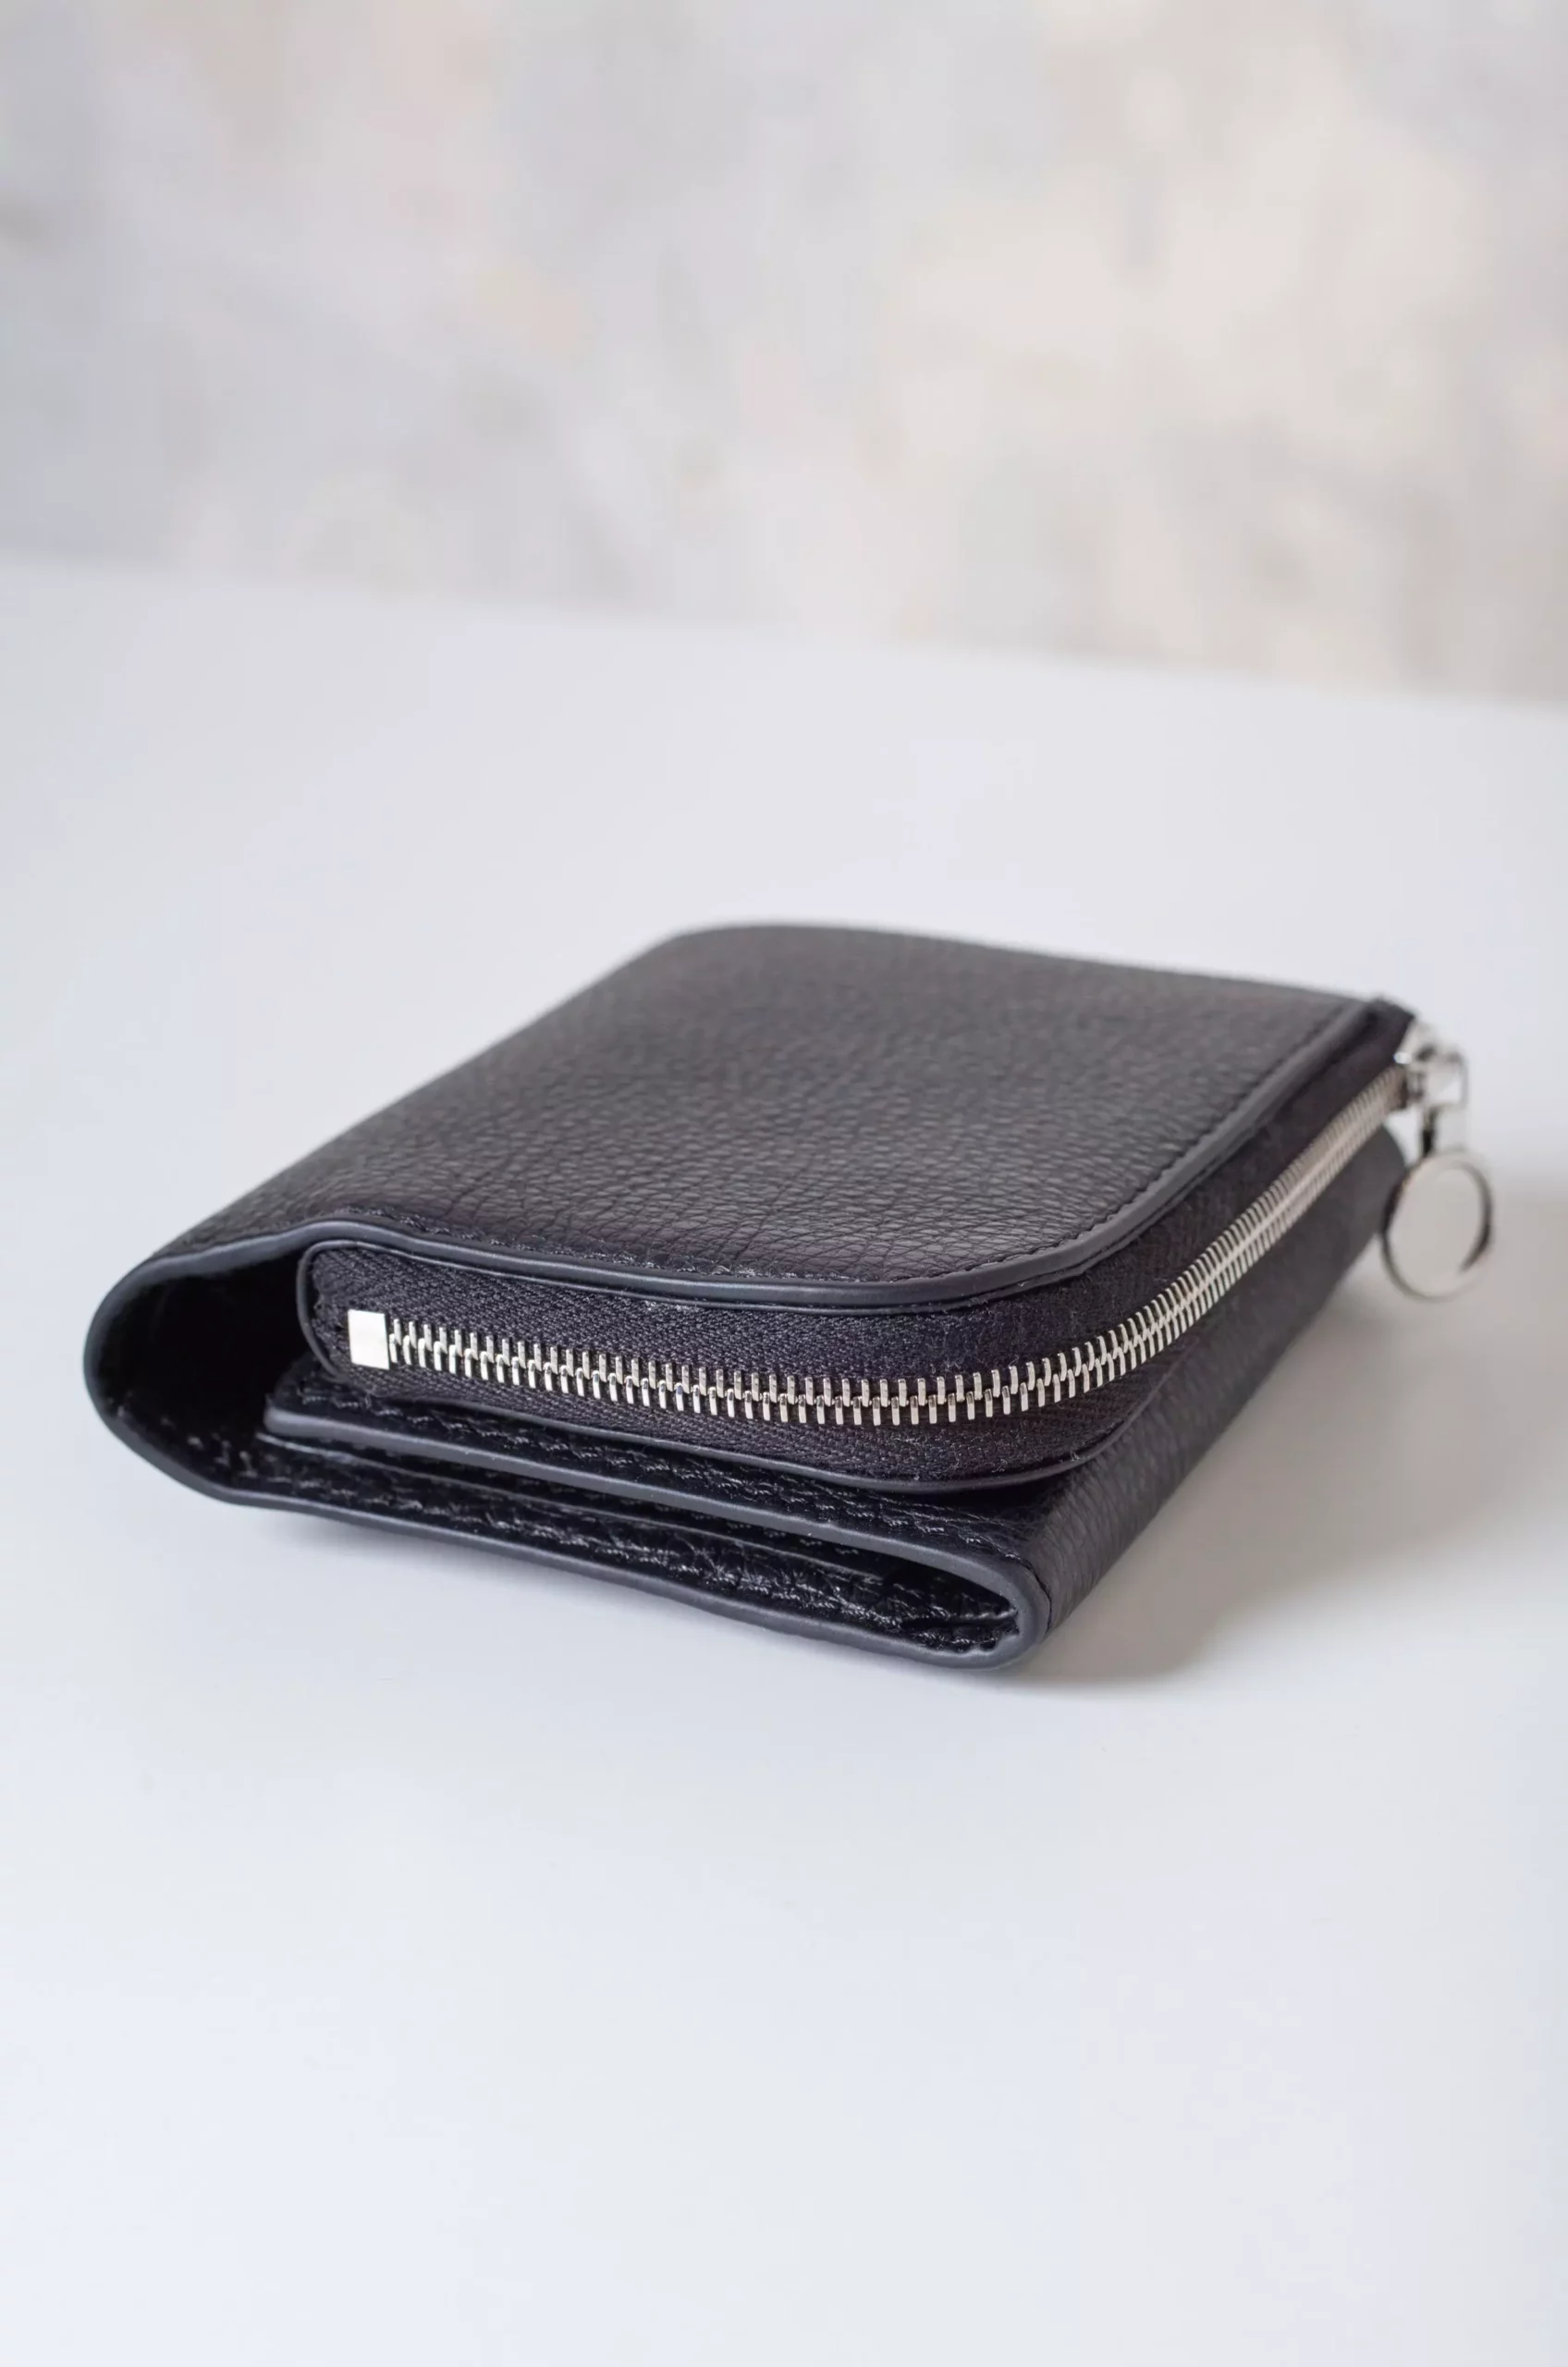 Aeta - Wallet Type A PG15 - Black